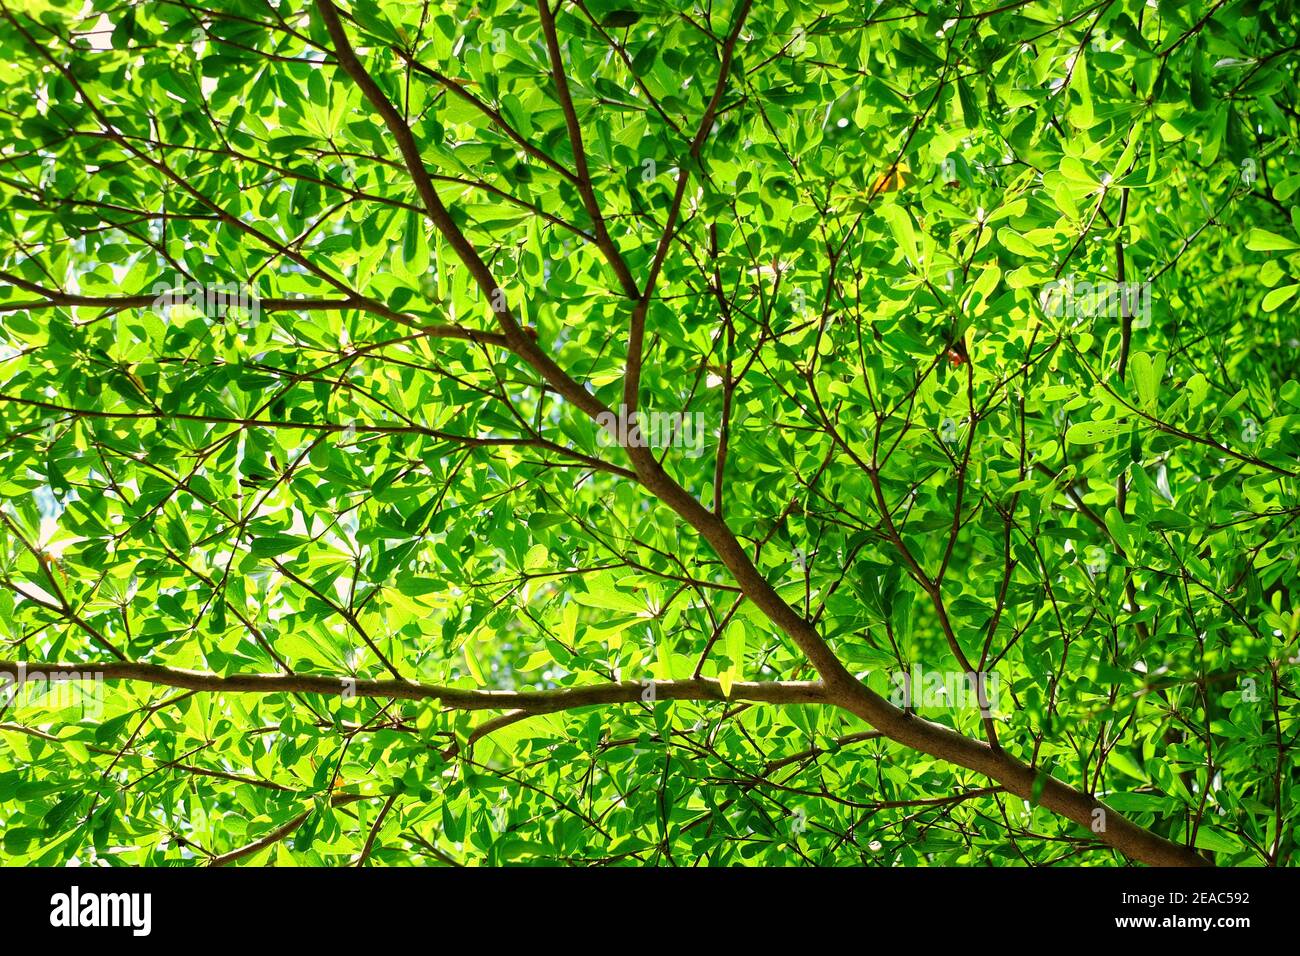 Une photo à angle bas de branches d'arbre de terminalia avec des feuilles vertes par une journée ensoleillée. Banque D'Images